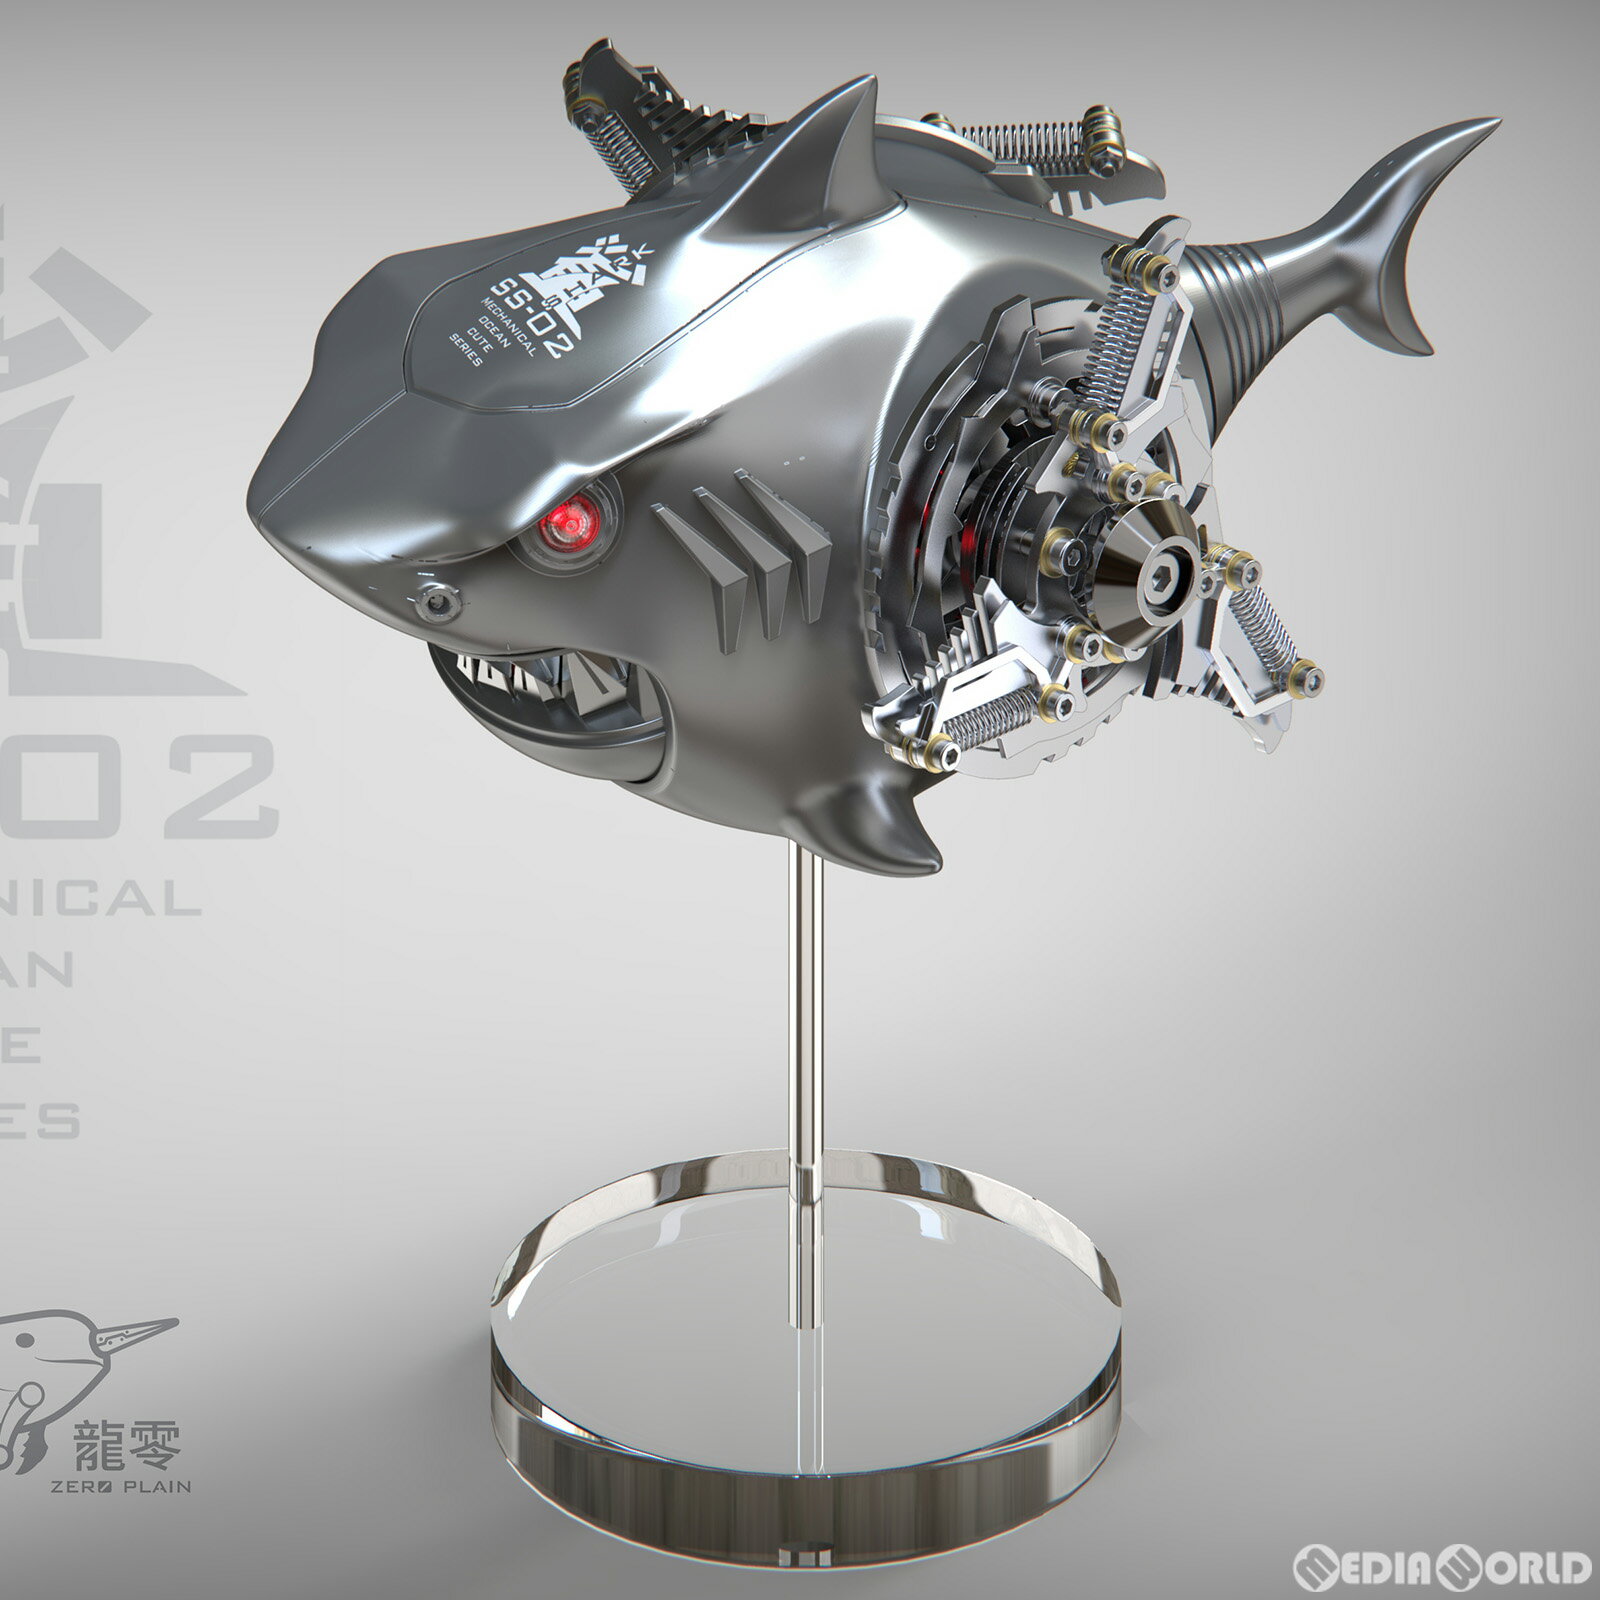 ZERO PLAIN メカニカル・オーシャン・キュート SS-02B 鮫(サメ) シルバー コレクションフィギュア 模道空間 SAYING ZONE(セーイング・ゾーン)(20230326)